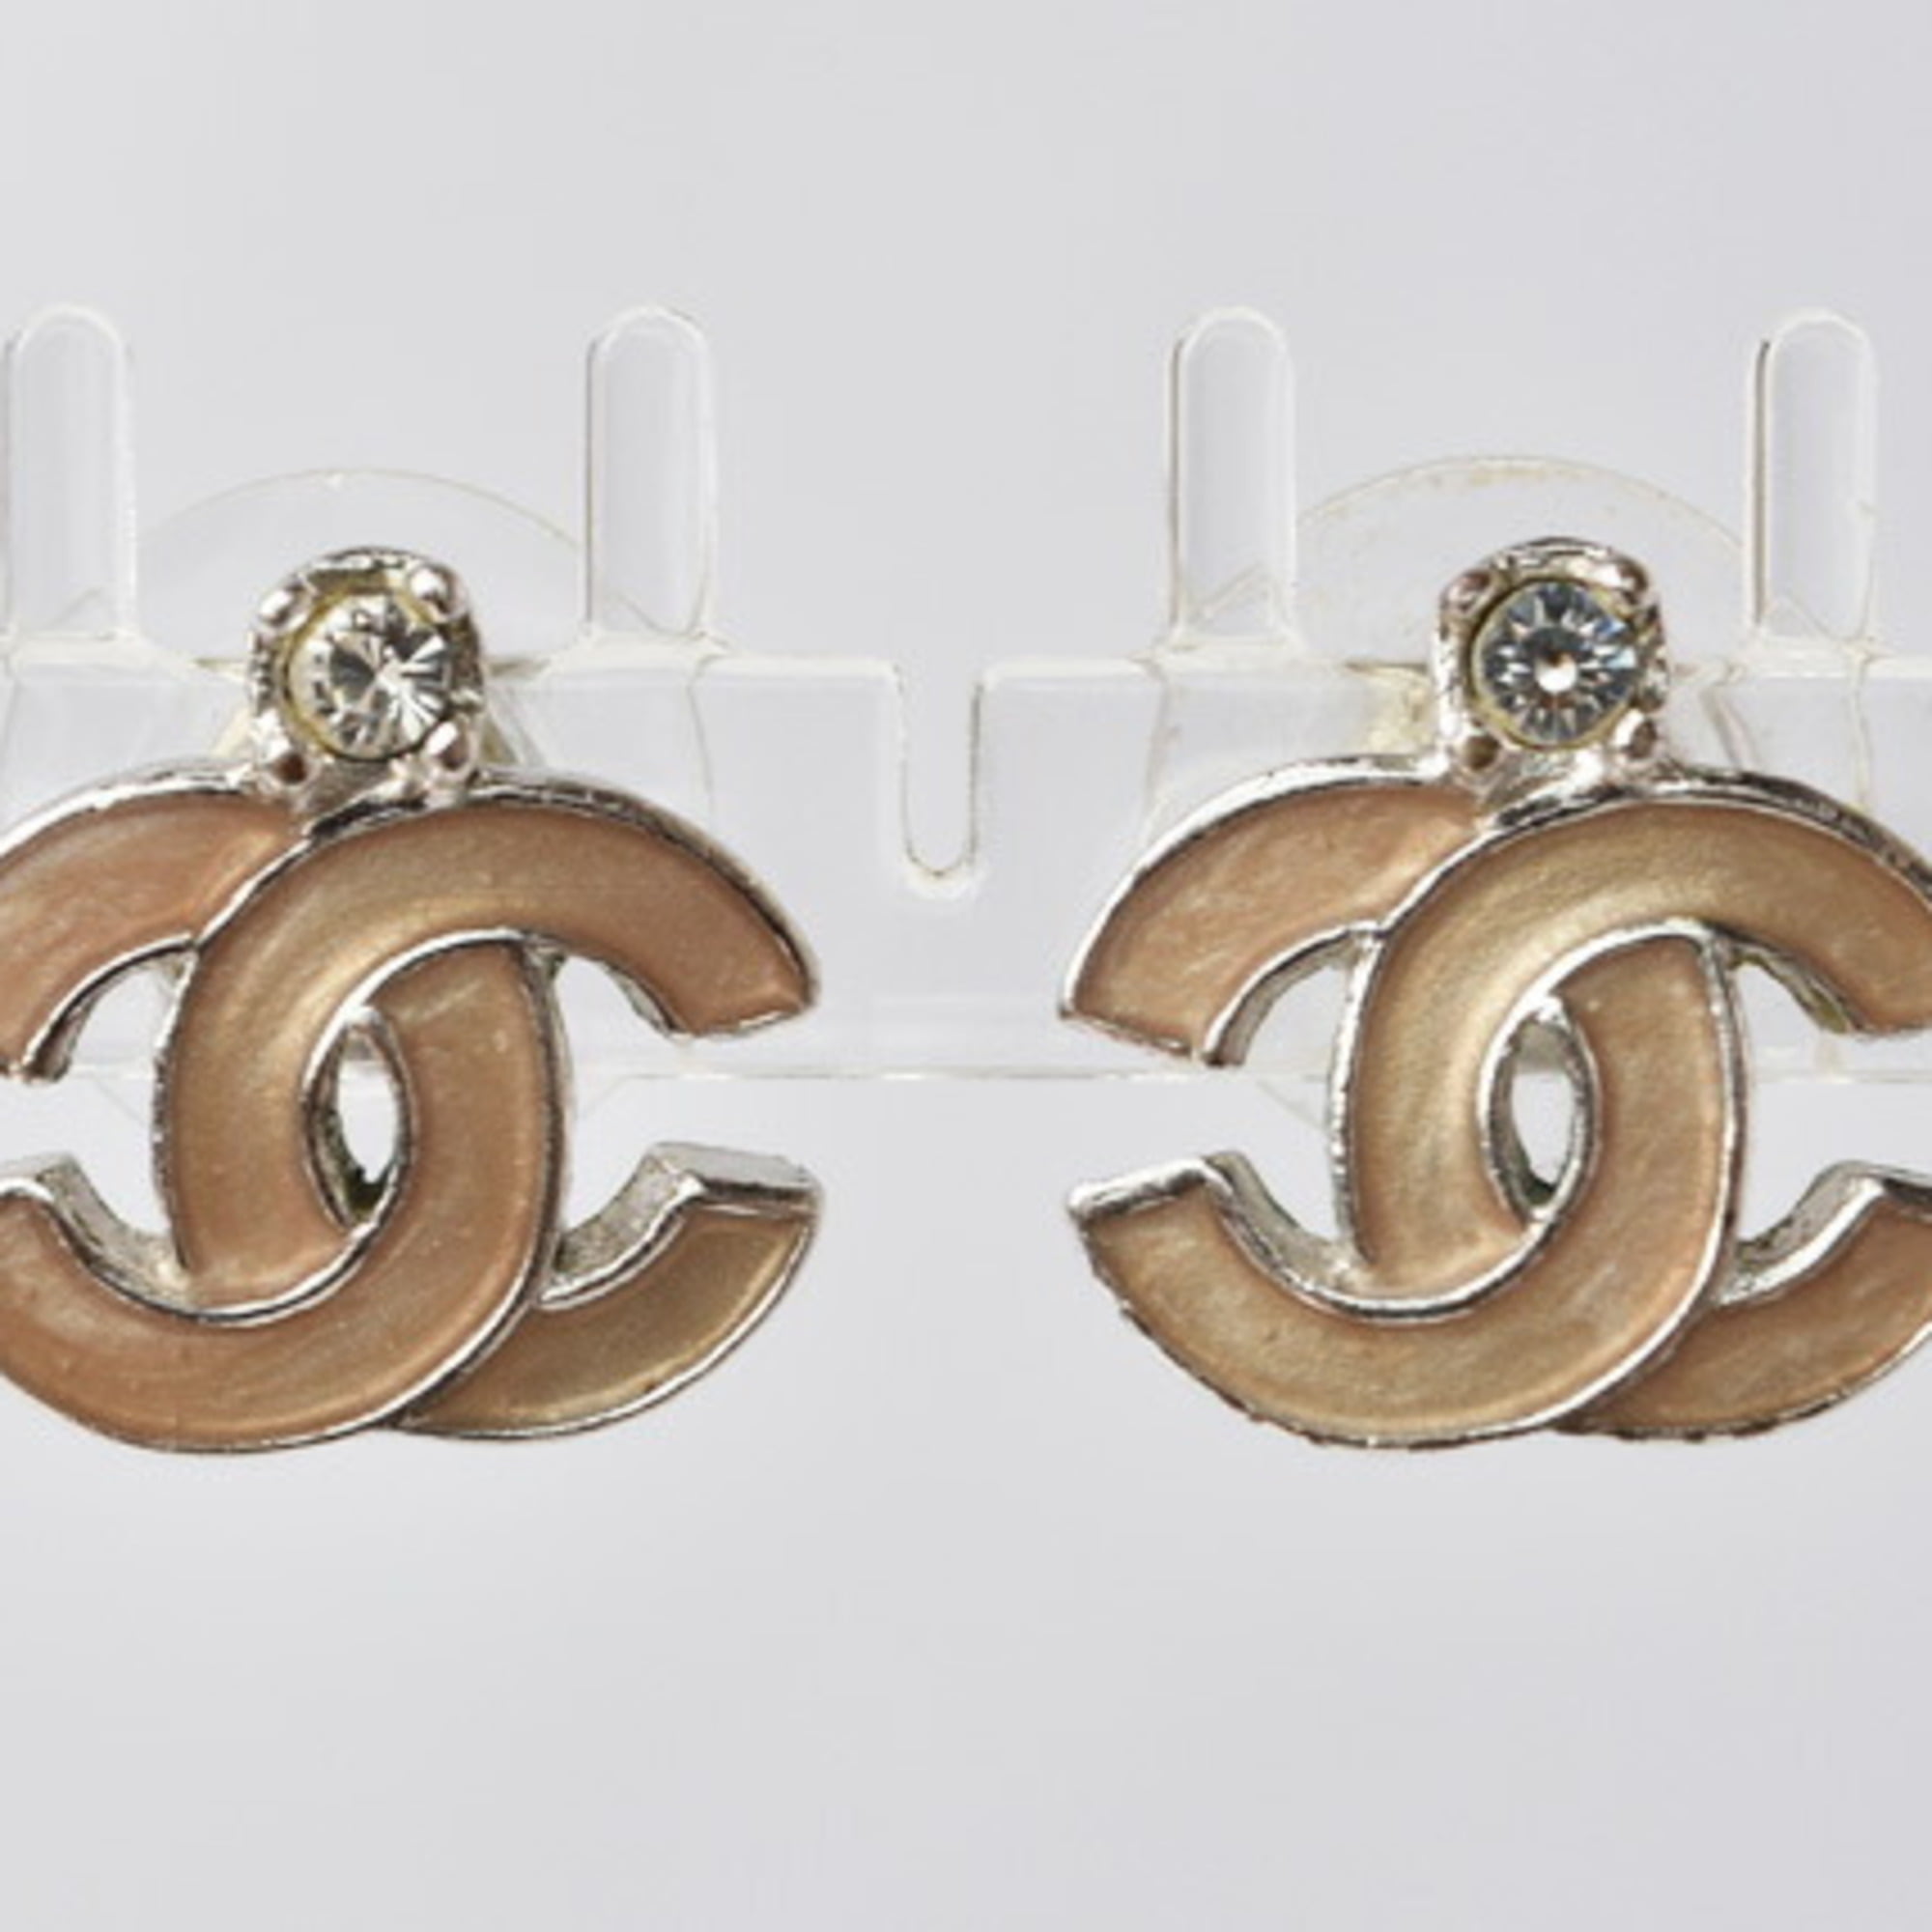 Chanel Earrings Cocomark Metal/Enamel Gold/Blue/Pink Beige Women's - 2 Pieces